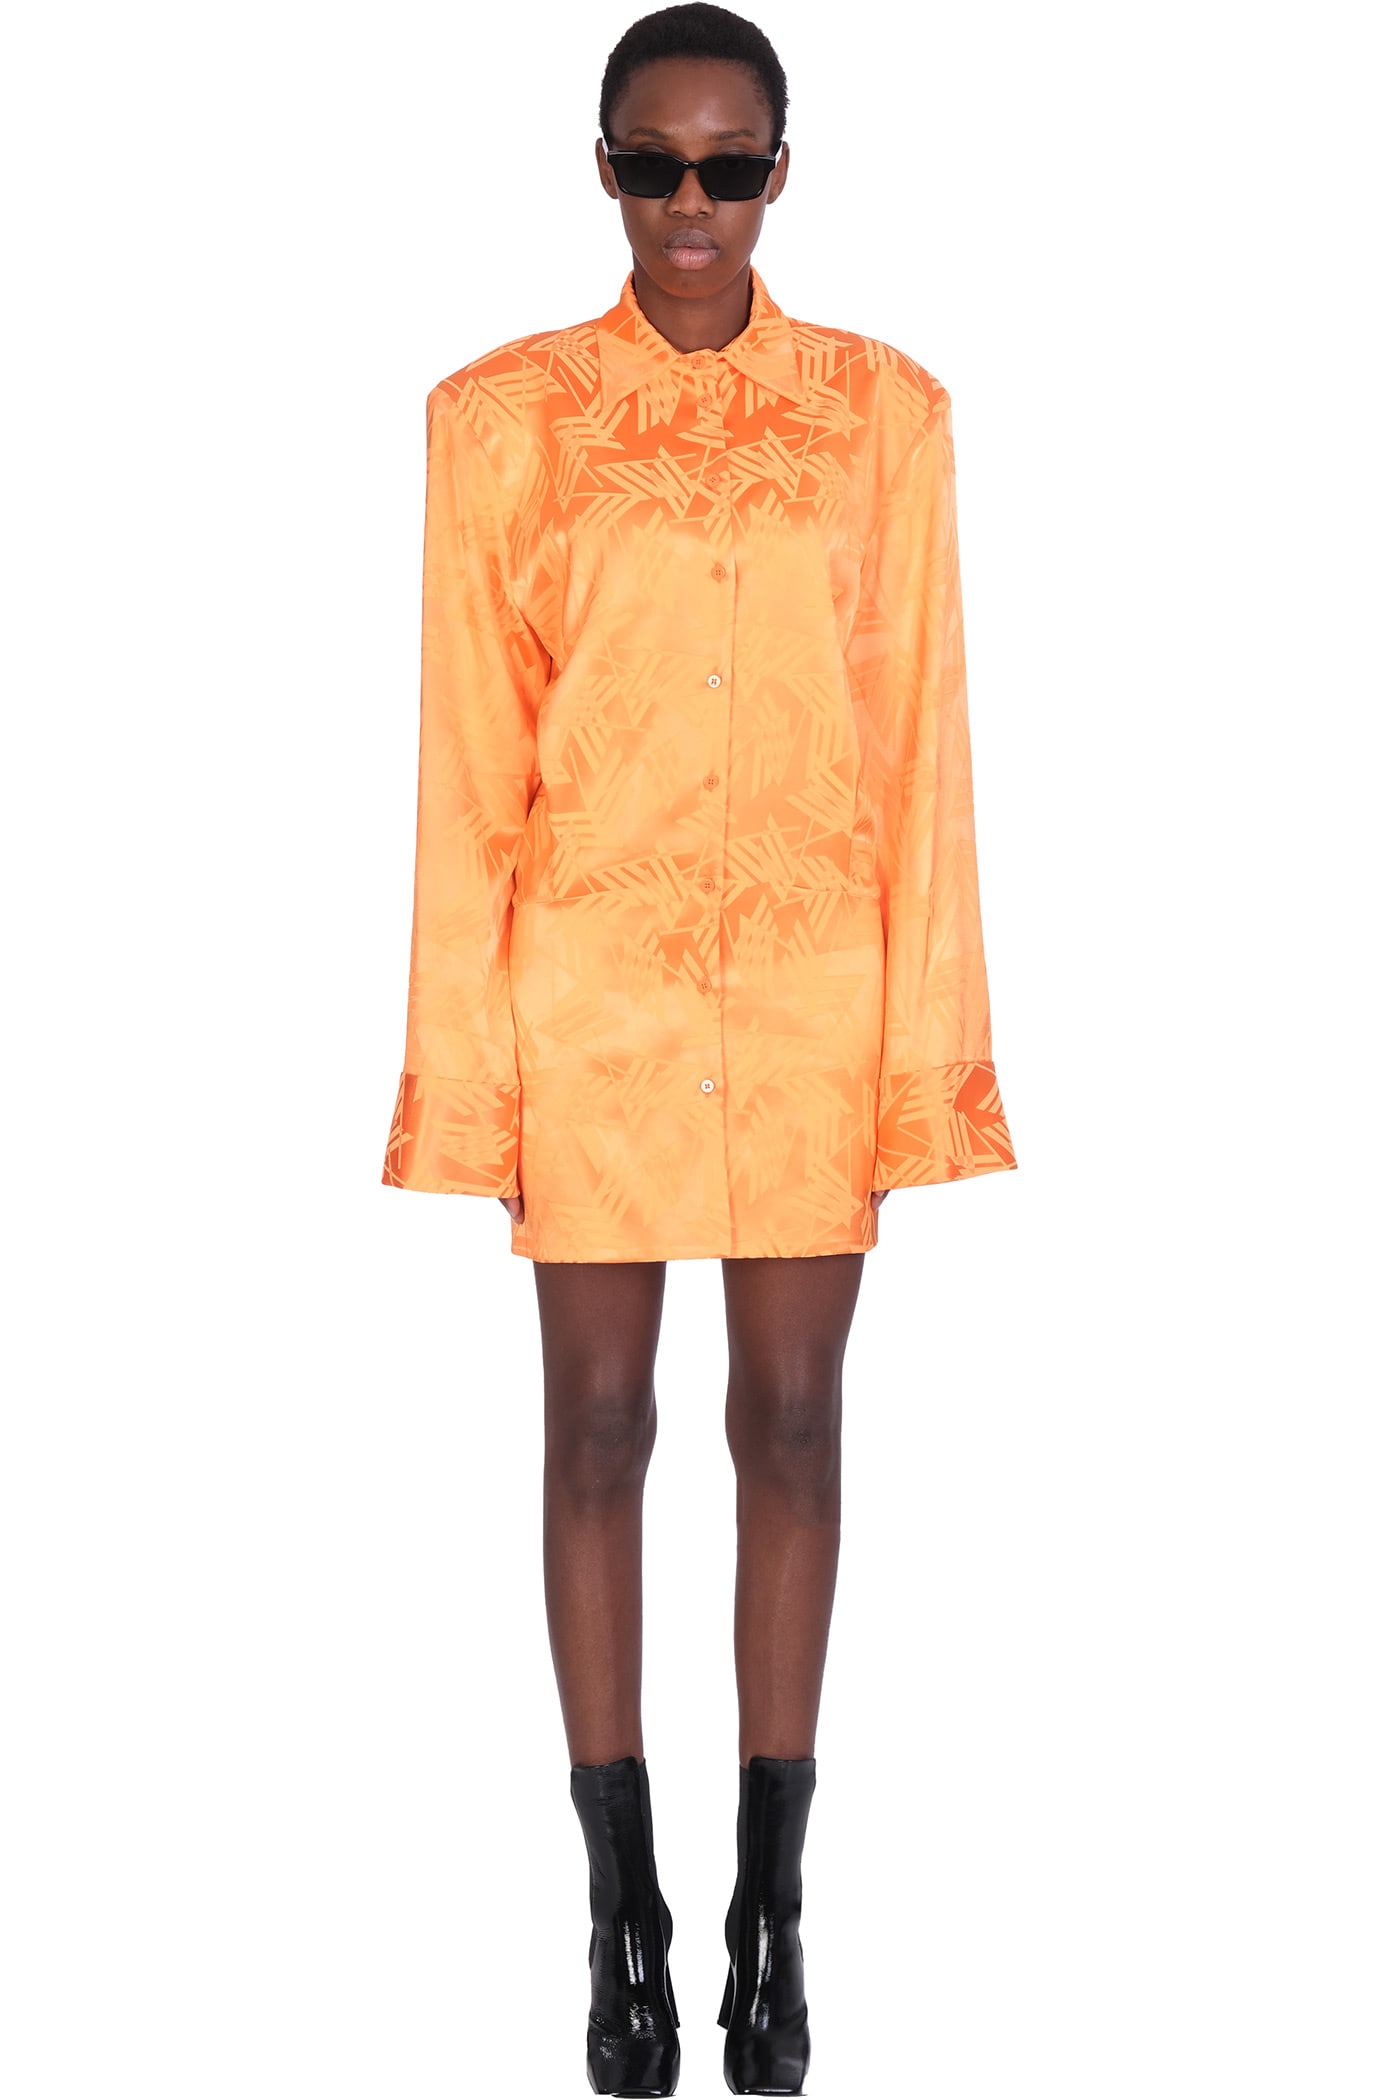 The Attico Dress In Orange Viscose